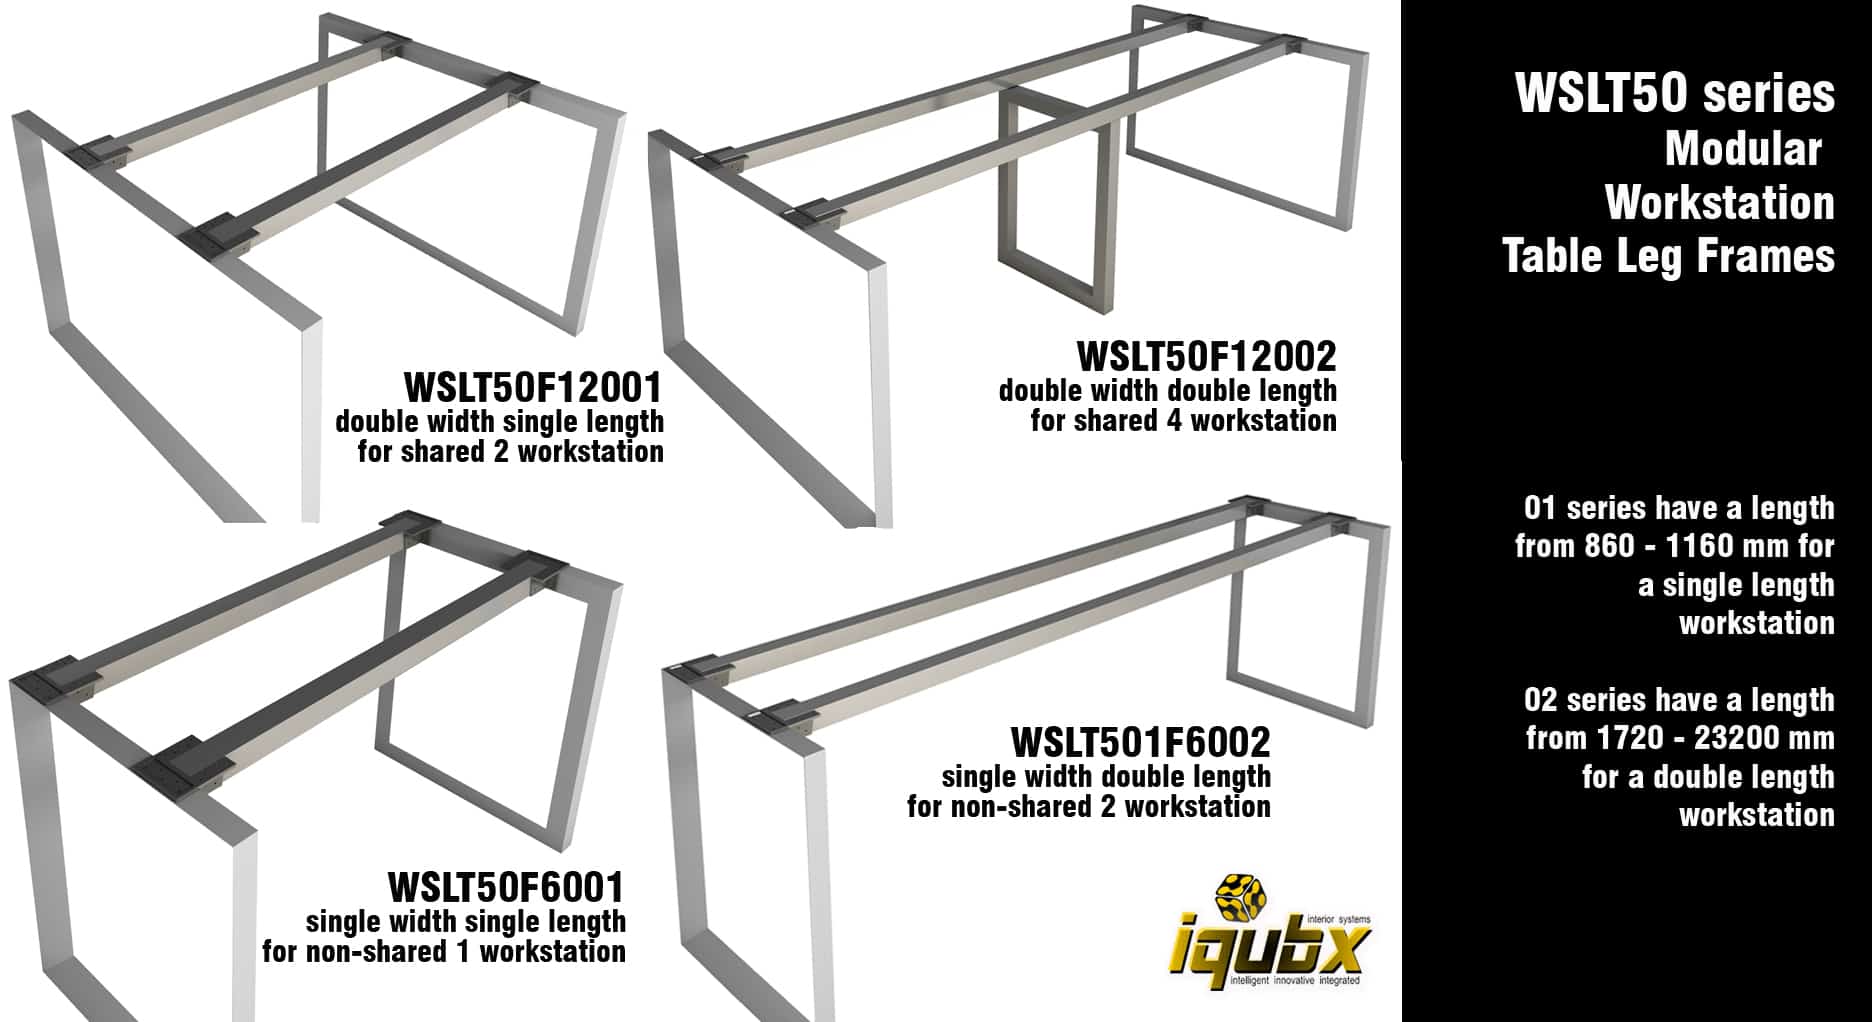 Iqubx modular leg frames